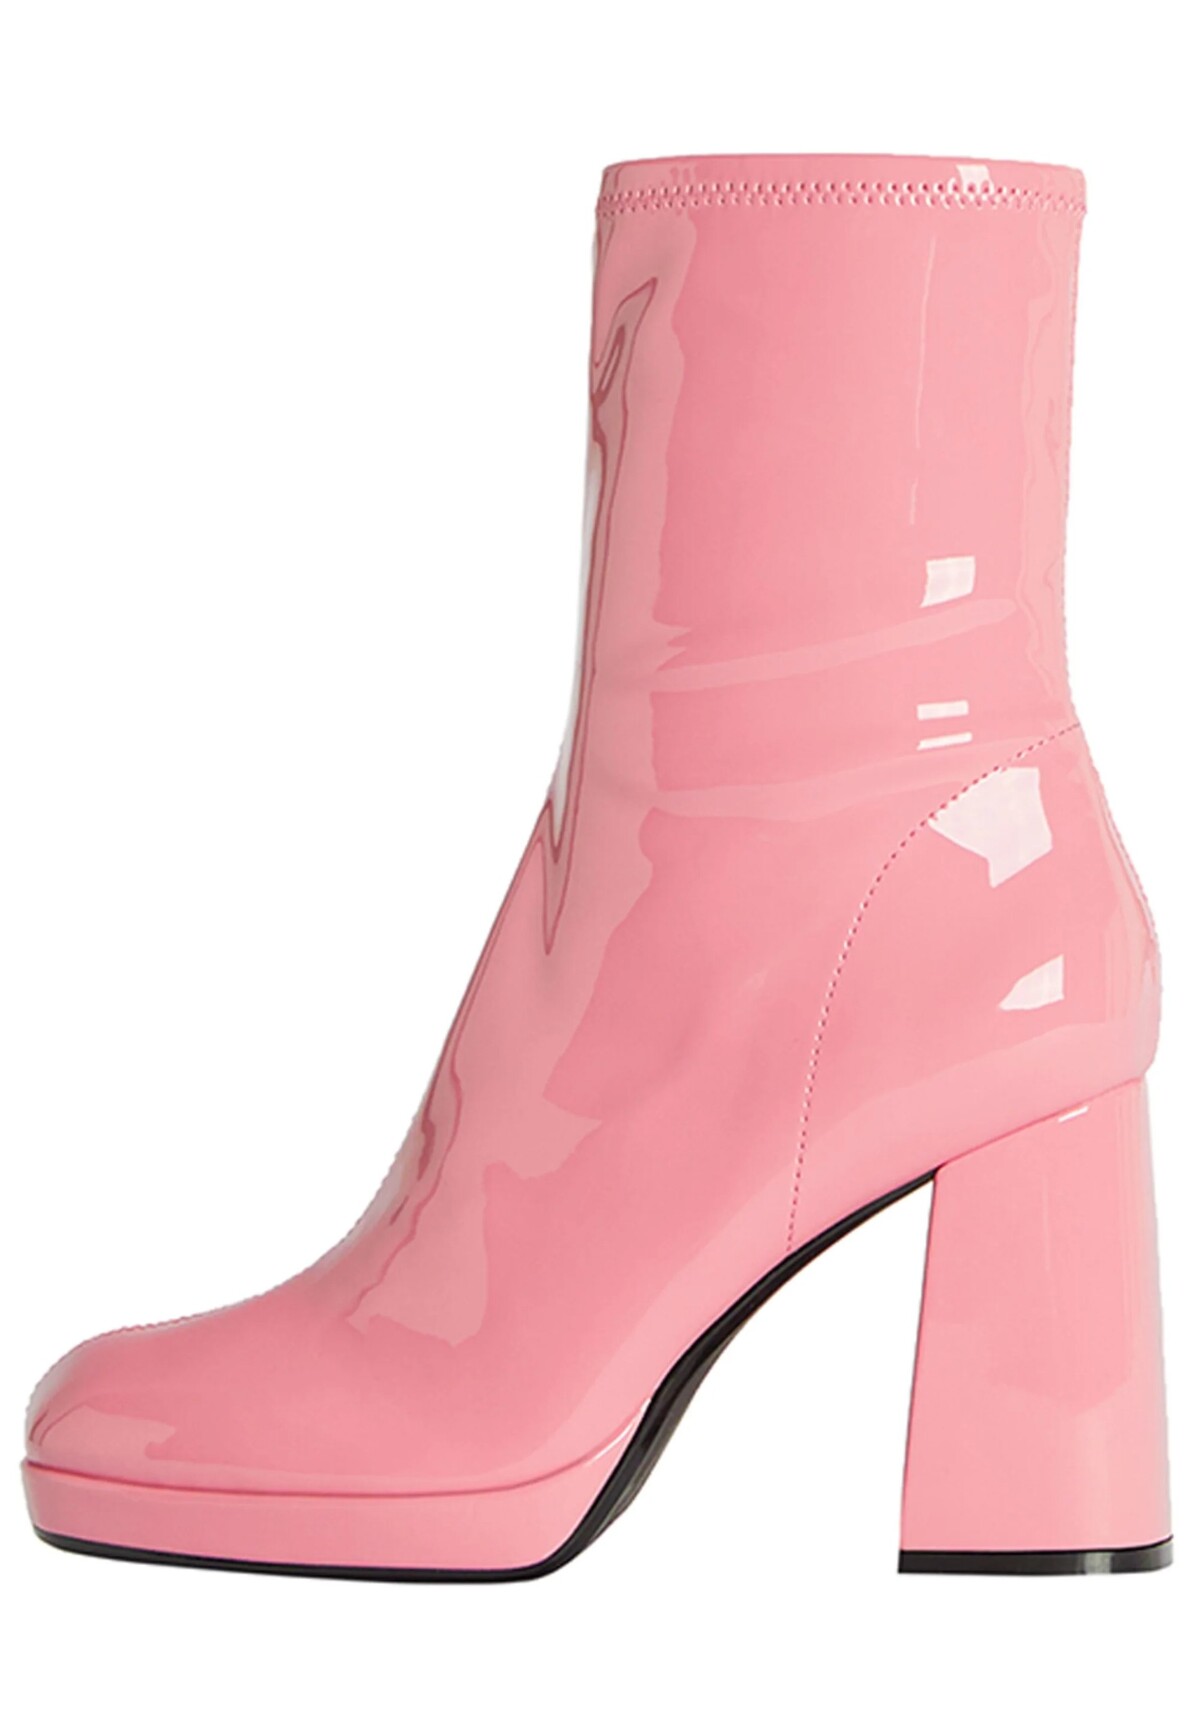 Pri barbiecore outfite nesmieš zabudnúť ani na správnu obuv. Lesklé členkové čižmy od značky Bershka môžeš mať už za 35,99 eura.